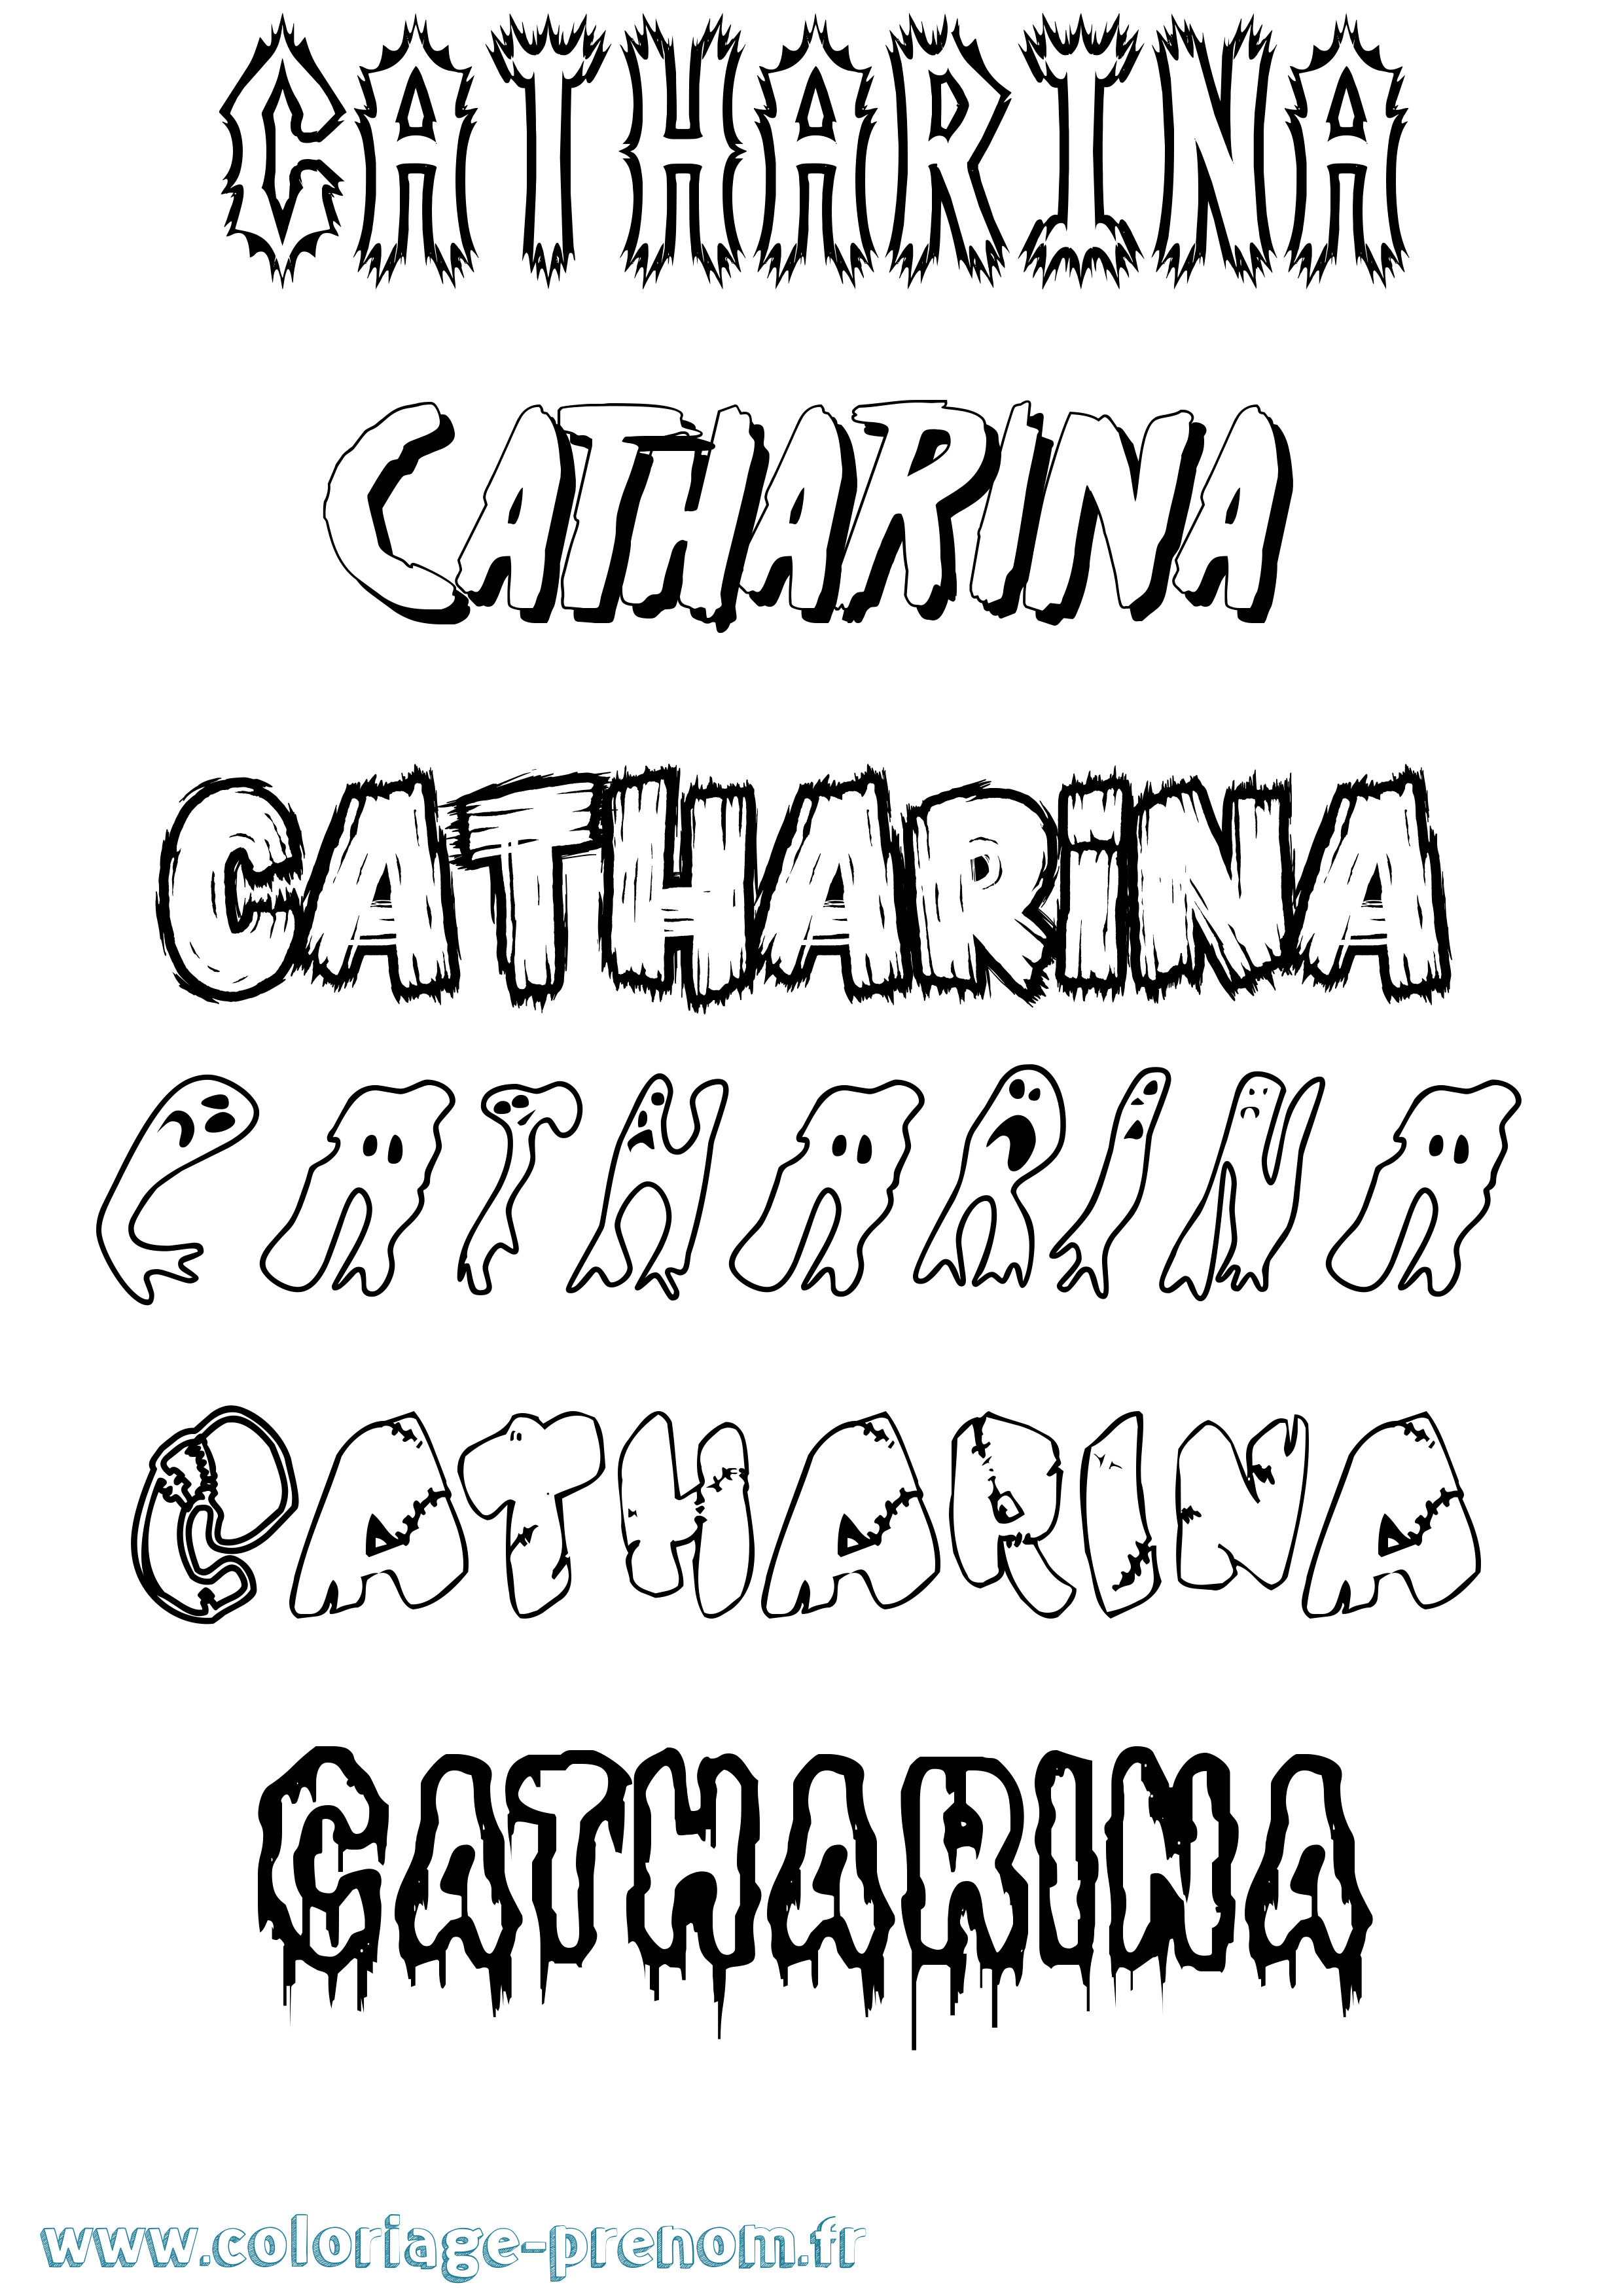 Coloriage prénom Catharina Frisson